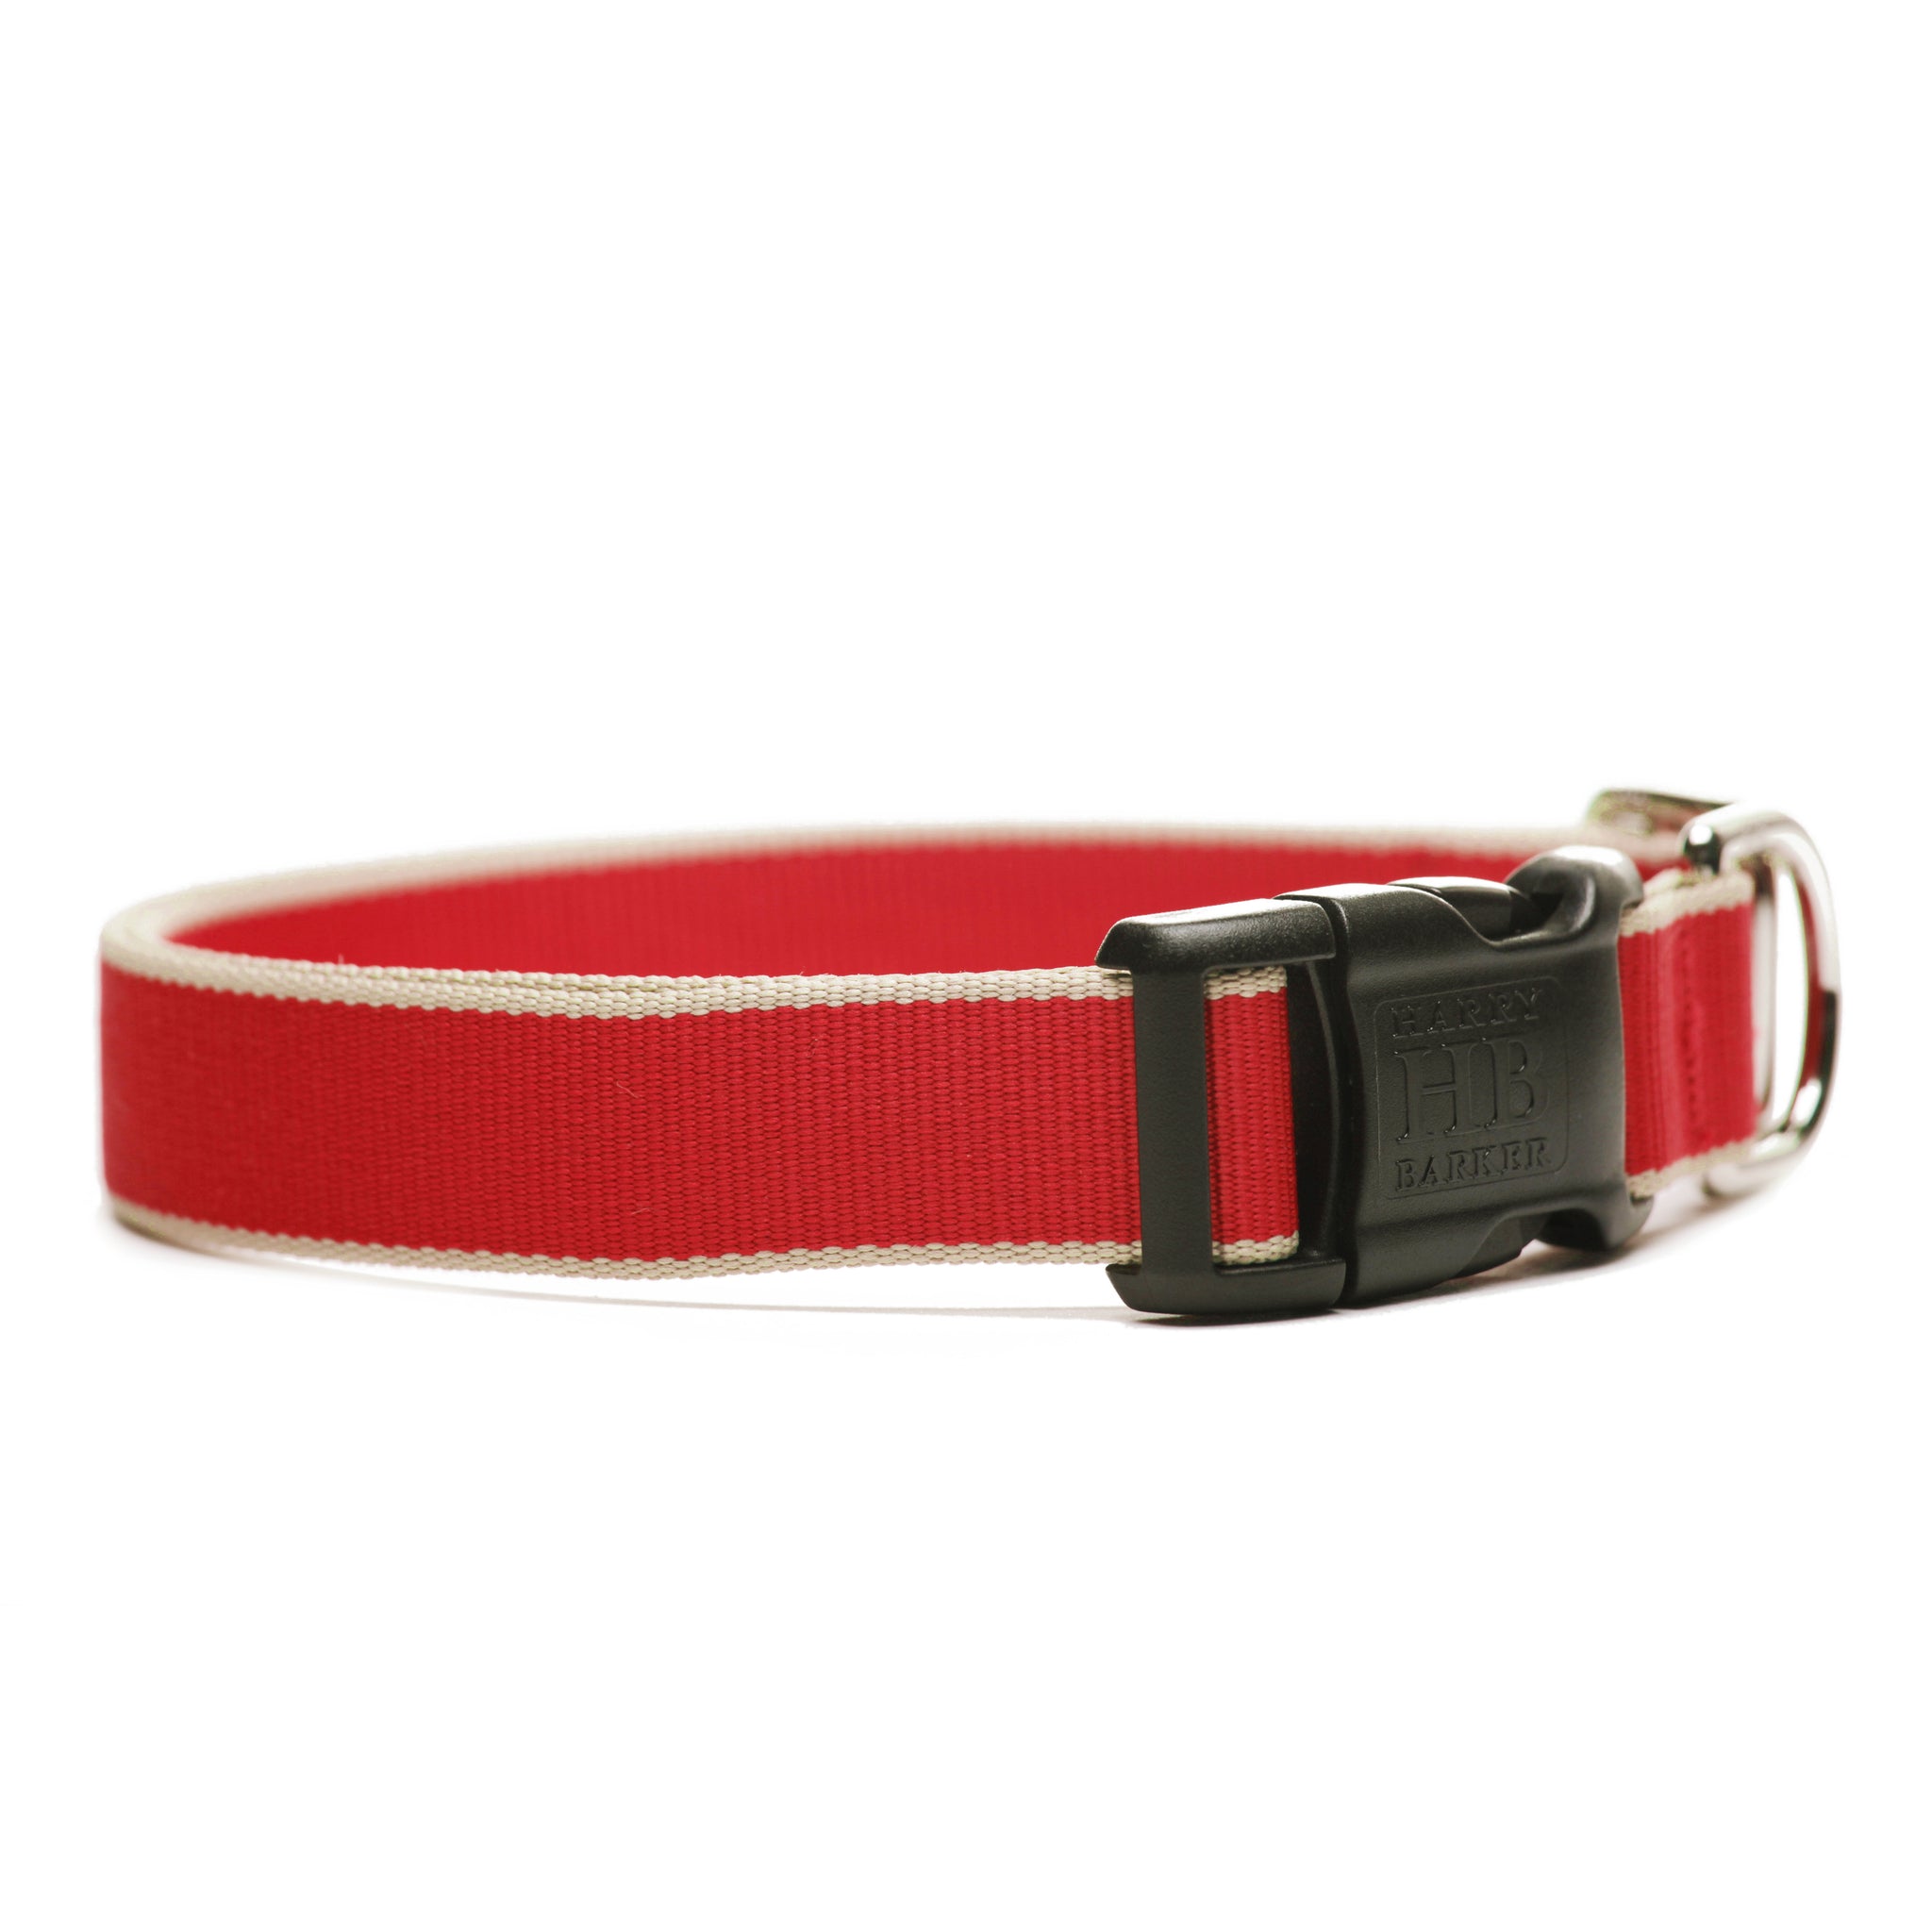 Eton Dog Collar